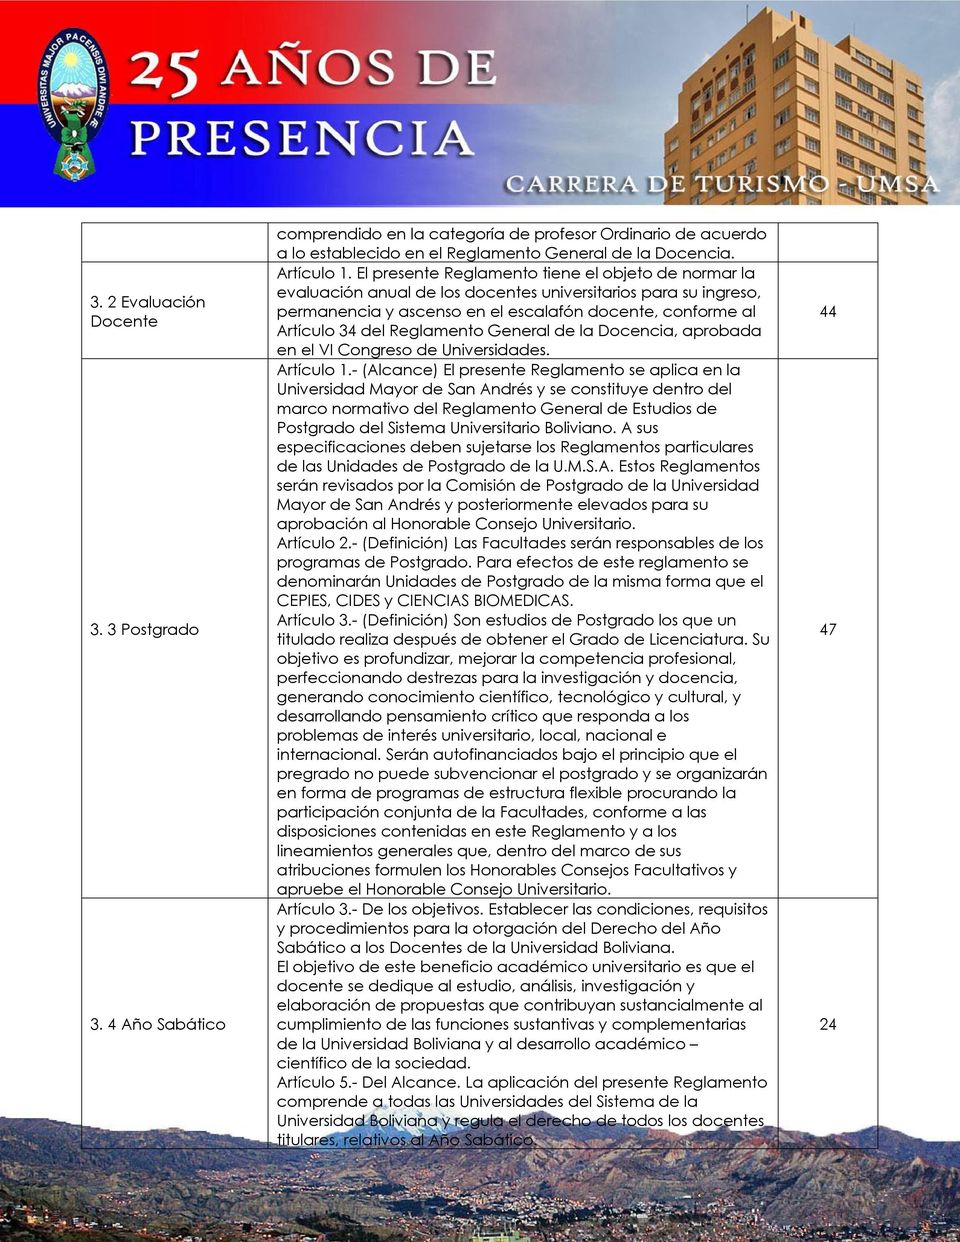 Reglamento General de la Docencia, aprobada en el VI Congreso de Universidades. Artículo 1.